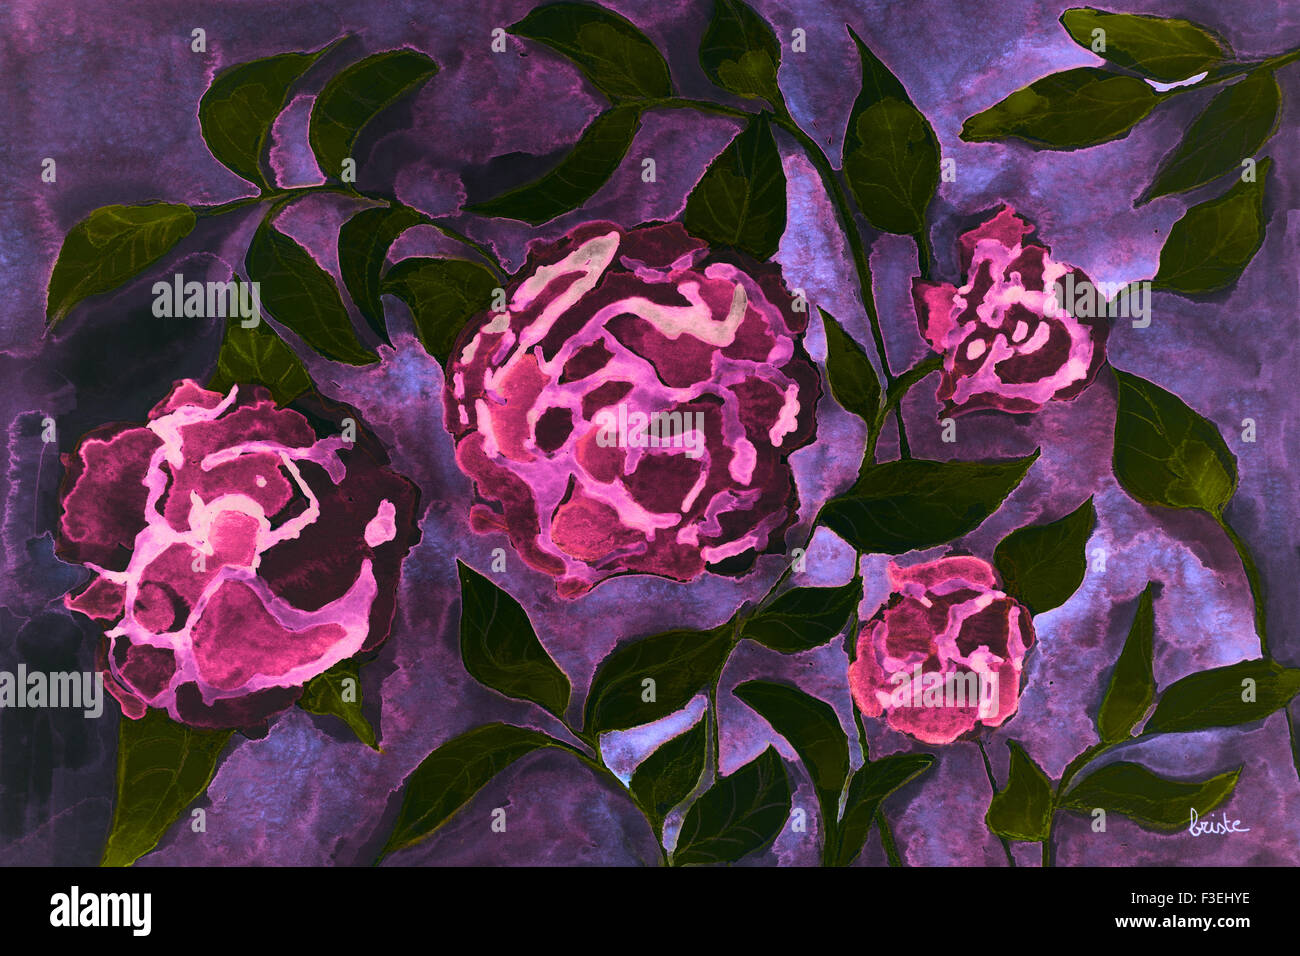 Rose fleurs fantaisie psychédélique sur un fond lilas foncé. la touche technique donne un effet de flou en raison de l'altération Banque D'Images